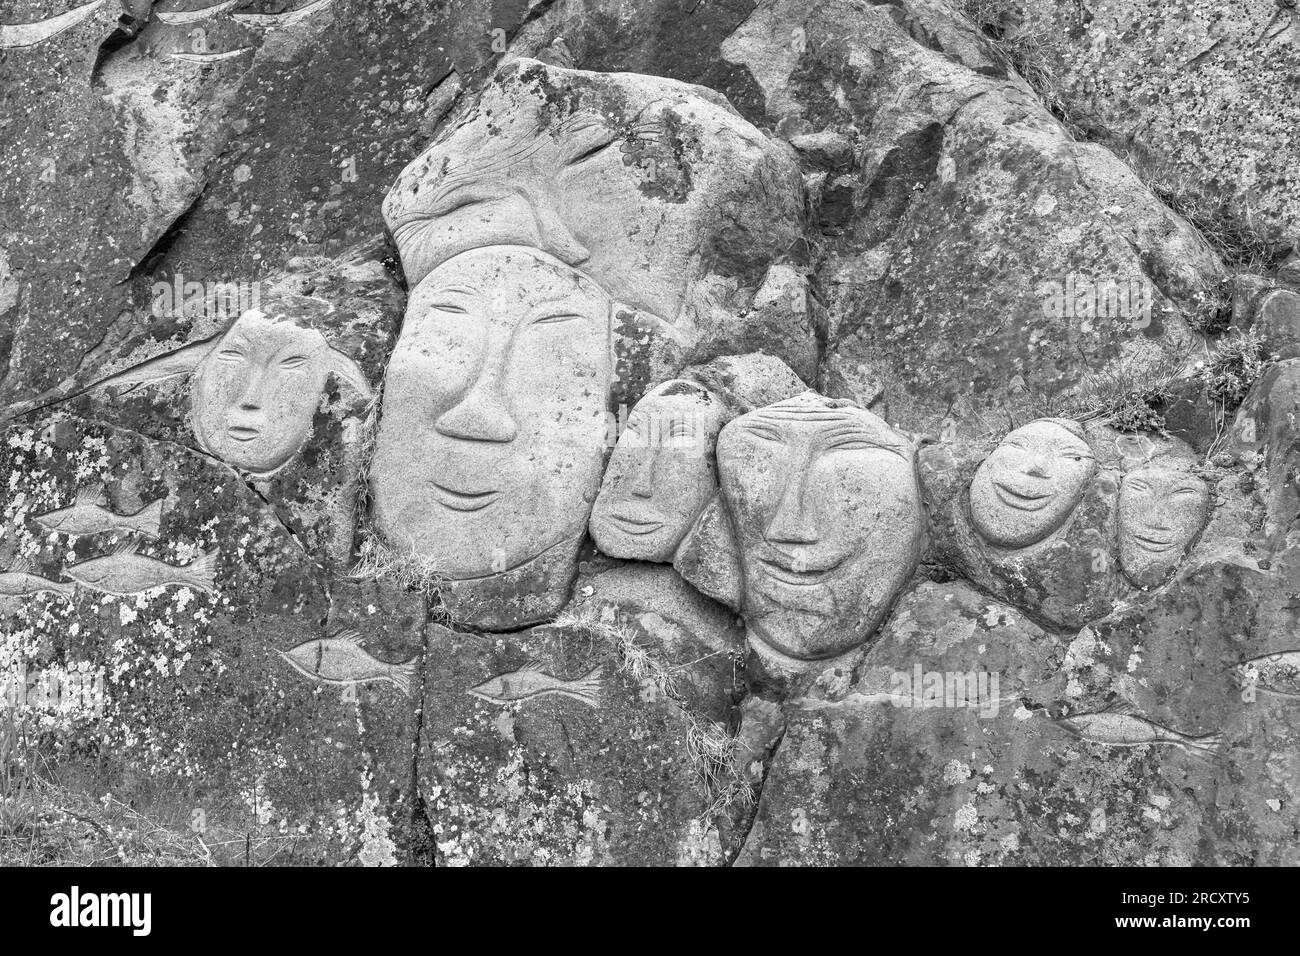 Visages, sculptures rupestres, dans le cadre du projet Stone & Man de l'artiste local aka Høegh à Qaqortoq, Groenland en juillet - monochrome, noir et blanc Banque D'Images